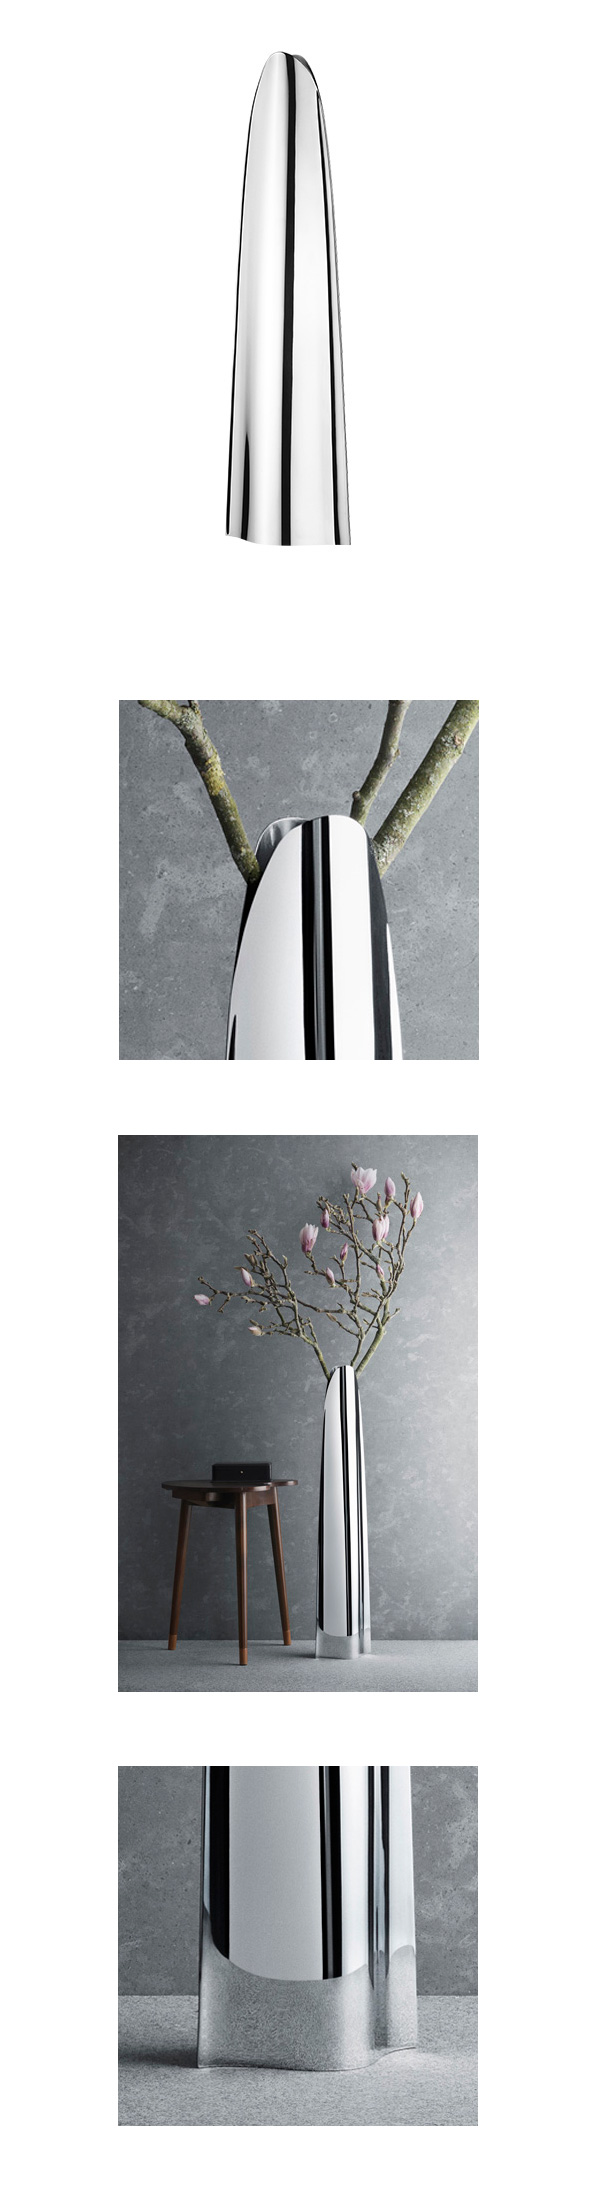 丹麥 Georg Jensen Indulgence Floor Vase, Large 完美系列 高挑 落地花瓶 大尺寸，Helle Damkjaer 海兒 丹克傑爾 設計